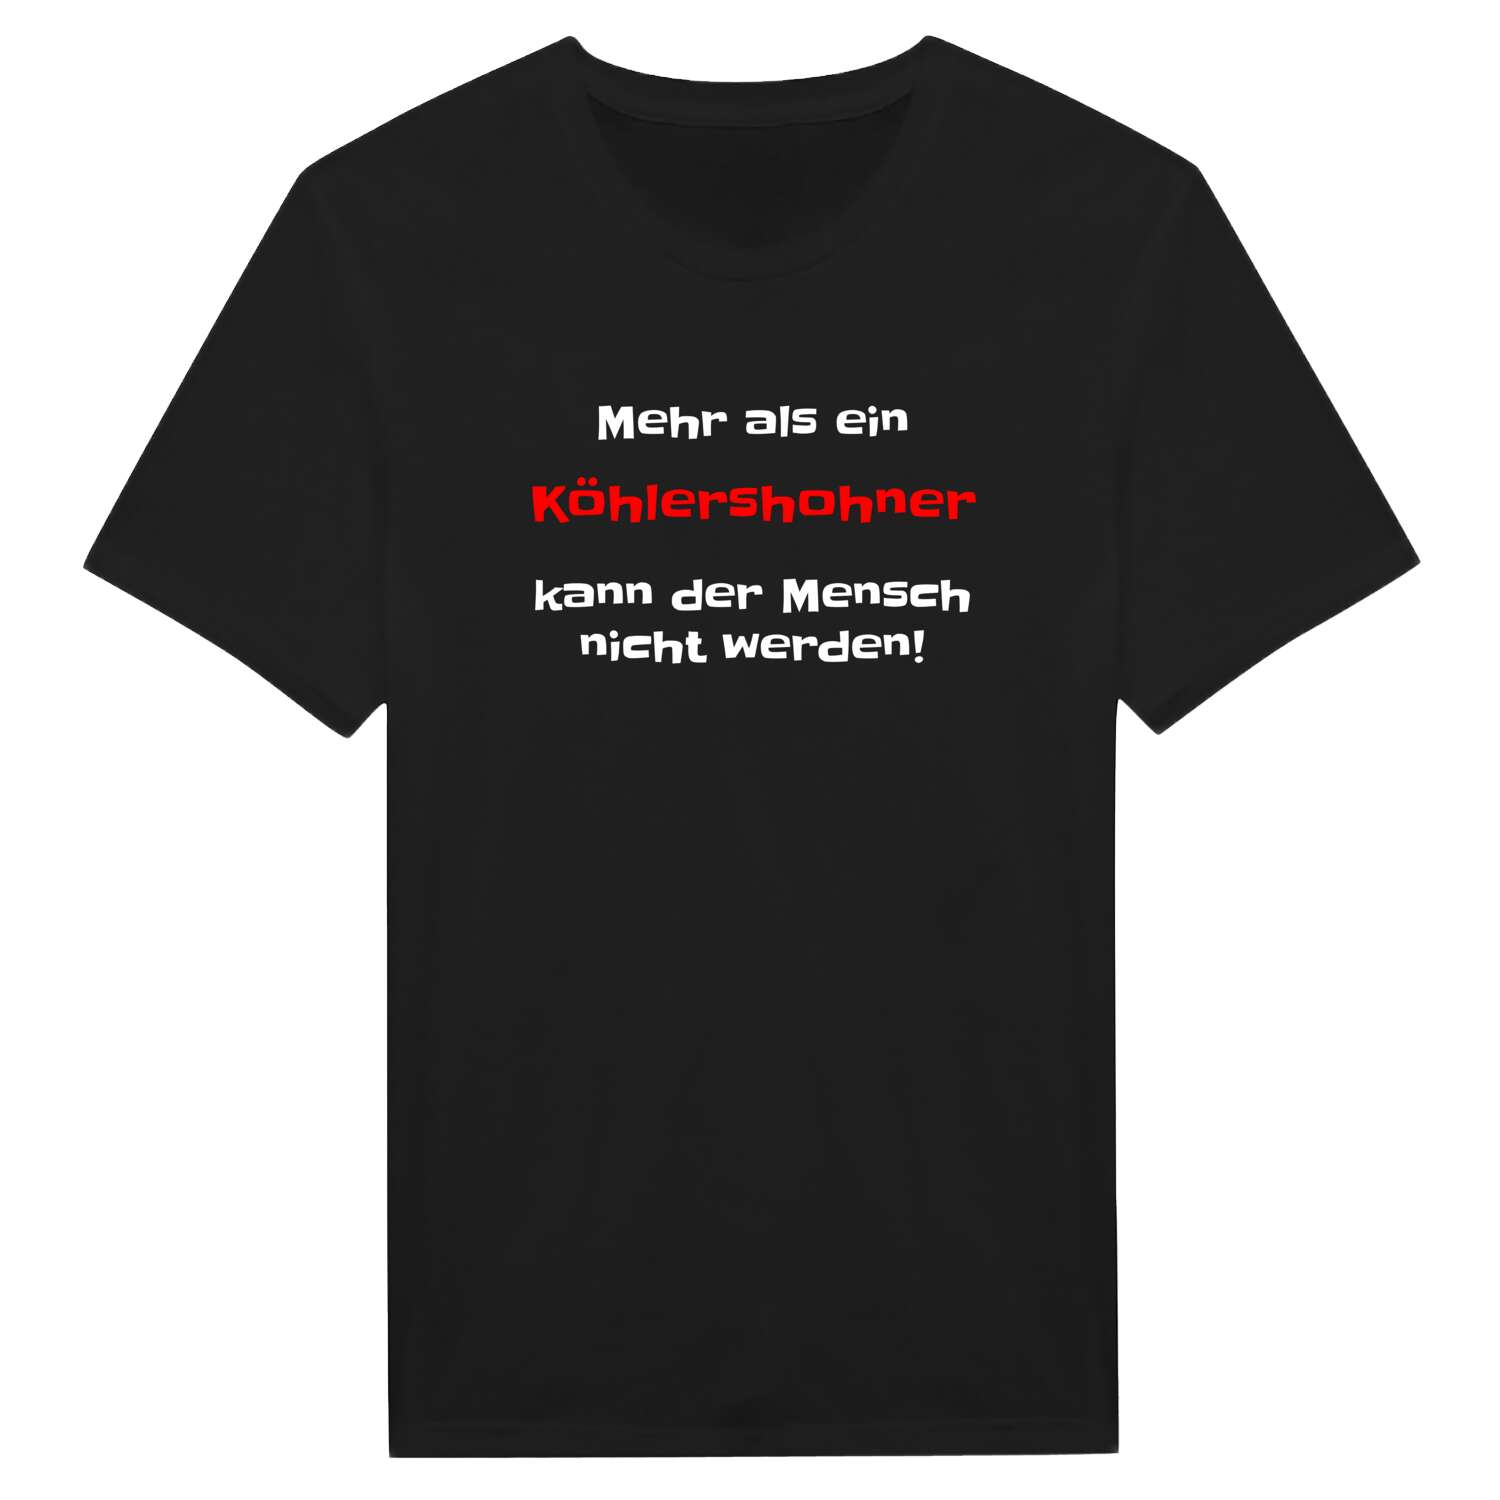 Köhlershohn T-Shirt »Mehr als ein«